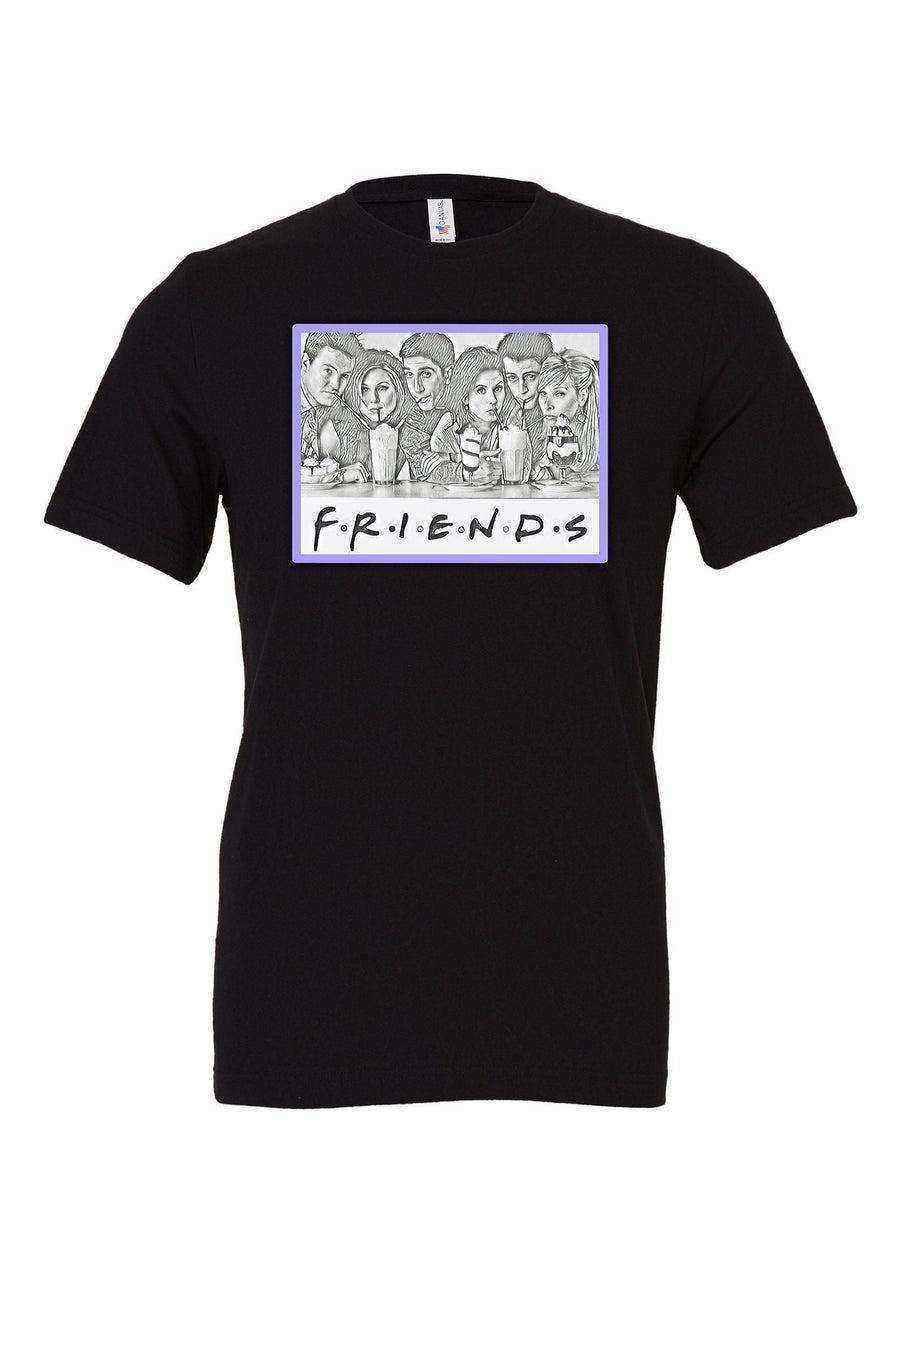 Friends Shirt | Friends Fan Shirt - Dylan's Tees